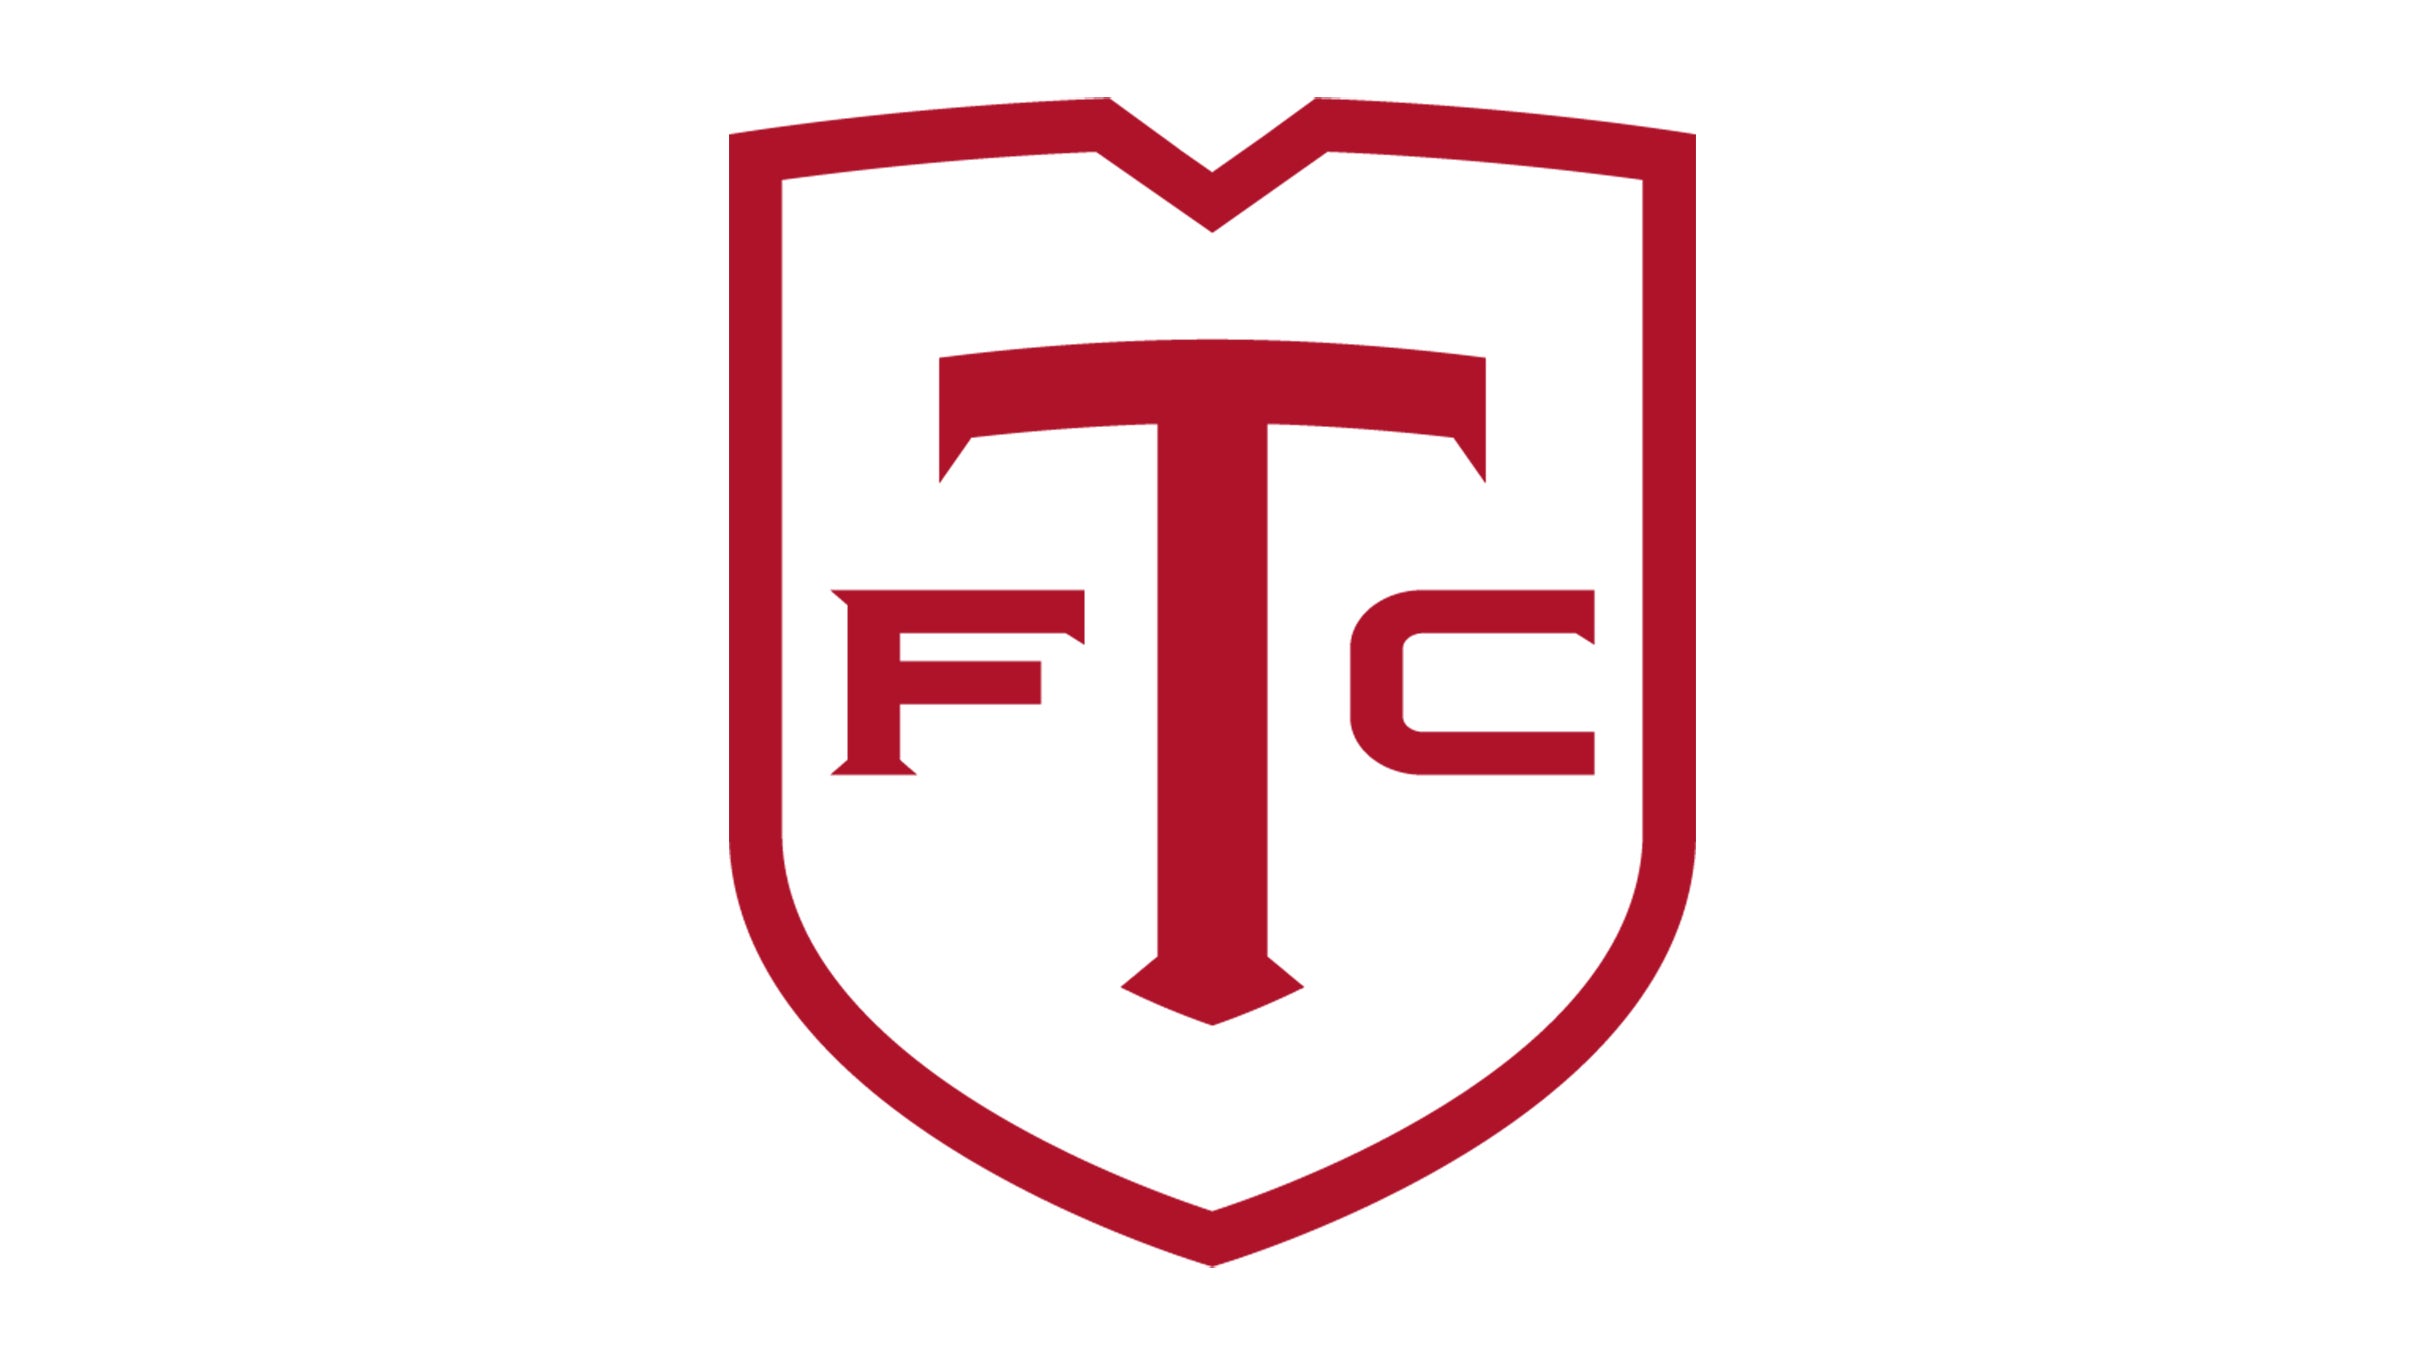 Toronto FC vs FC Dallas presale passwords